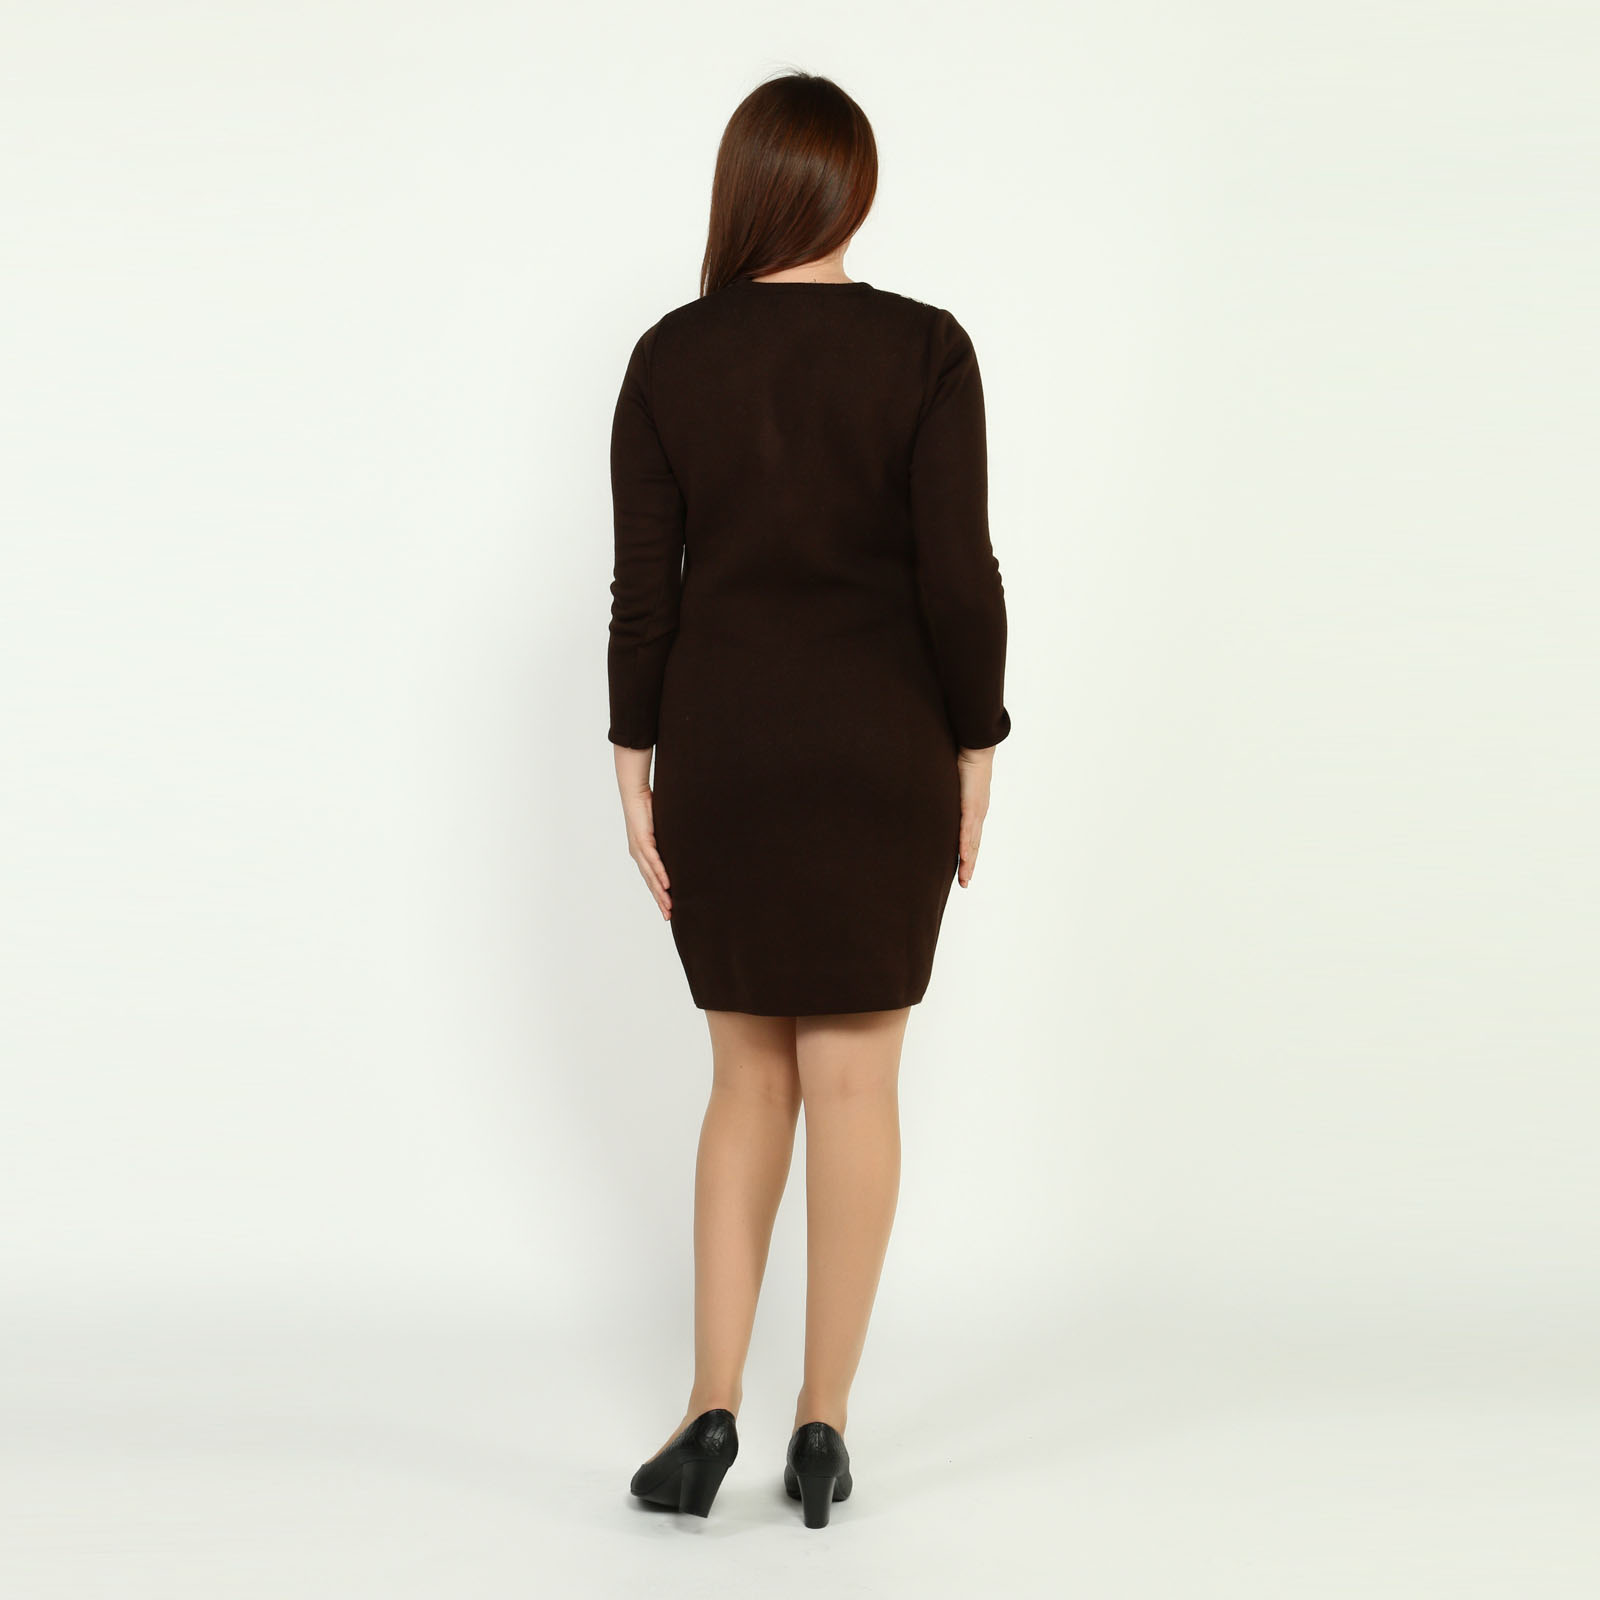 Платье-миди с контрастным узорным рисунком VeraVo, размер 56, цвет шоколадно-бежевый - фото 4